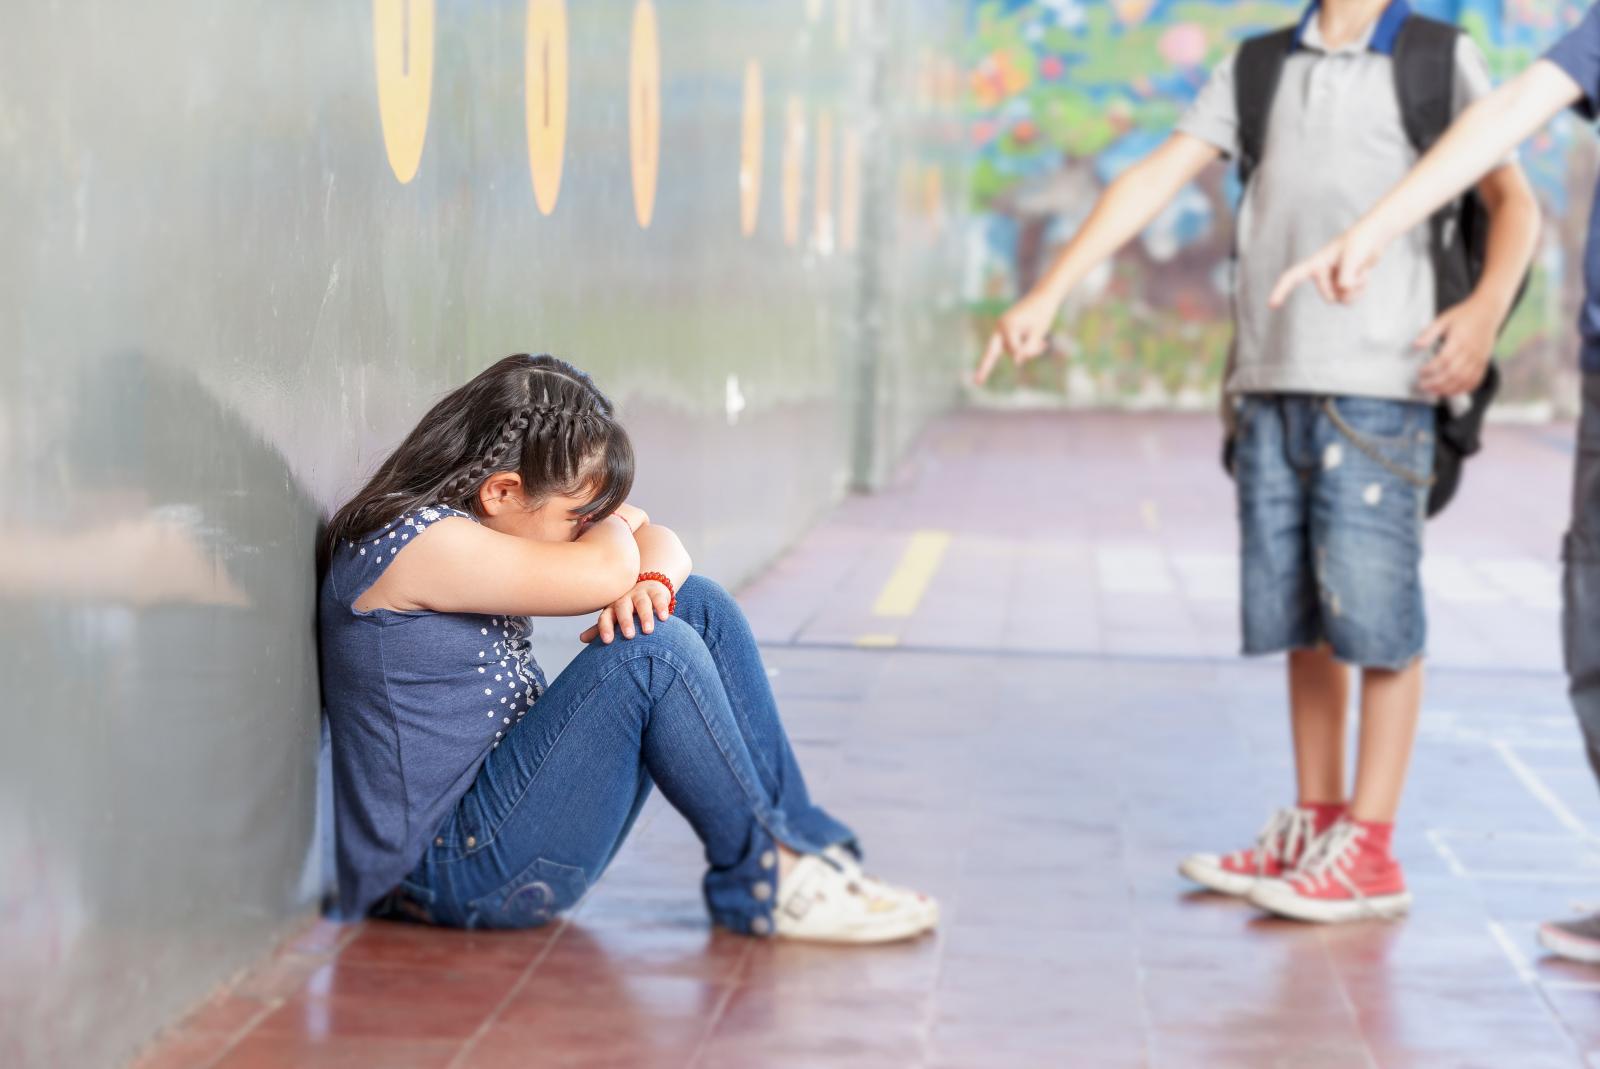 Τι πρέπει να κάνουμε όταν υποψιαζόμαστε ότι τα παιδιά μας έχουν πέσει θύματα bullying;